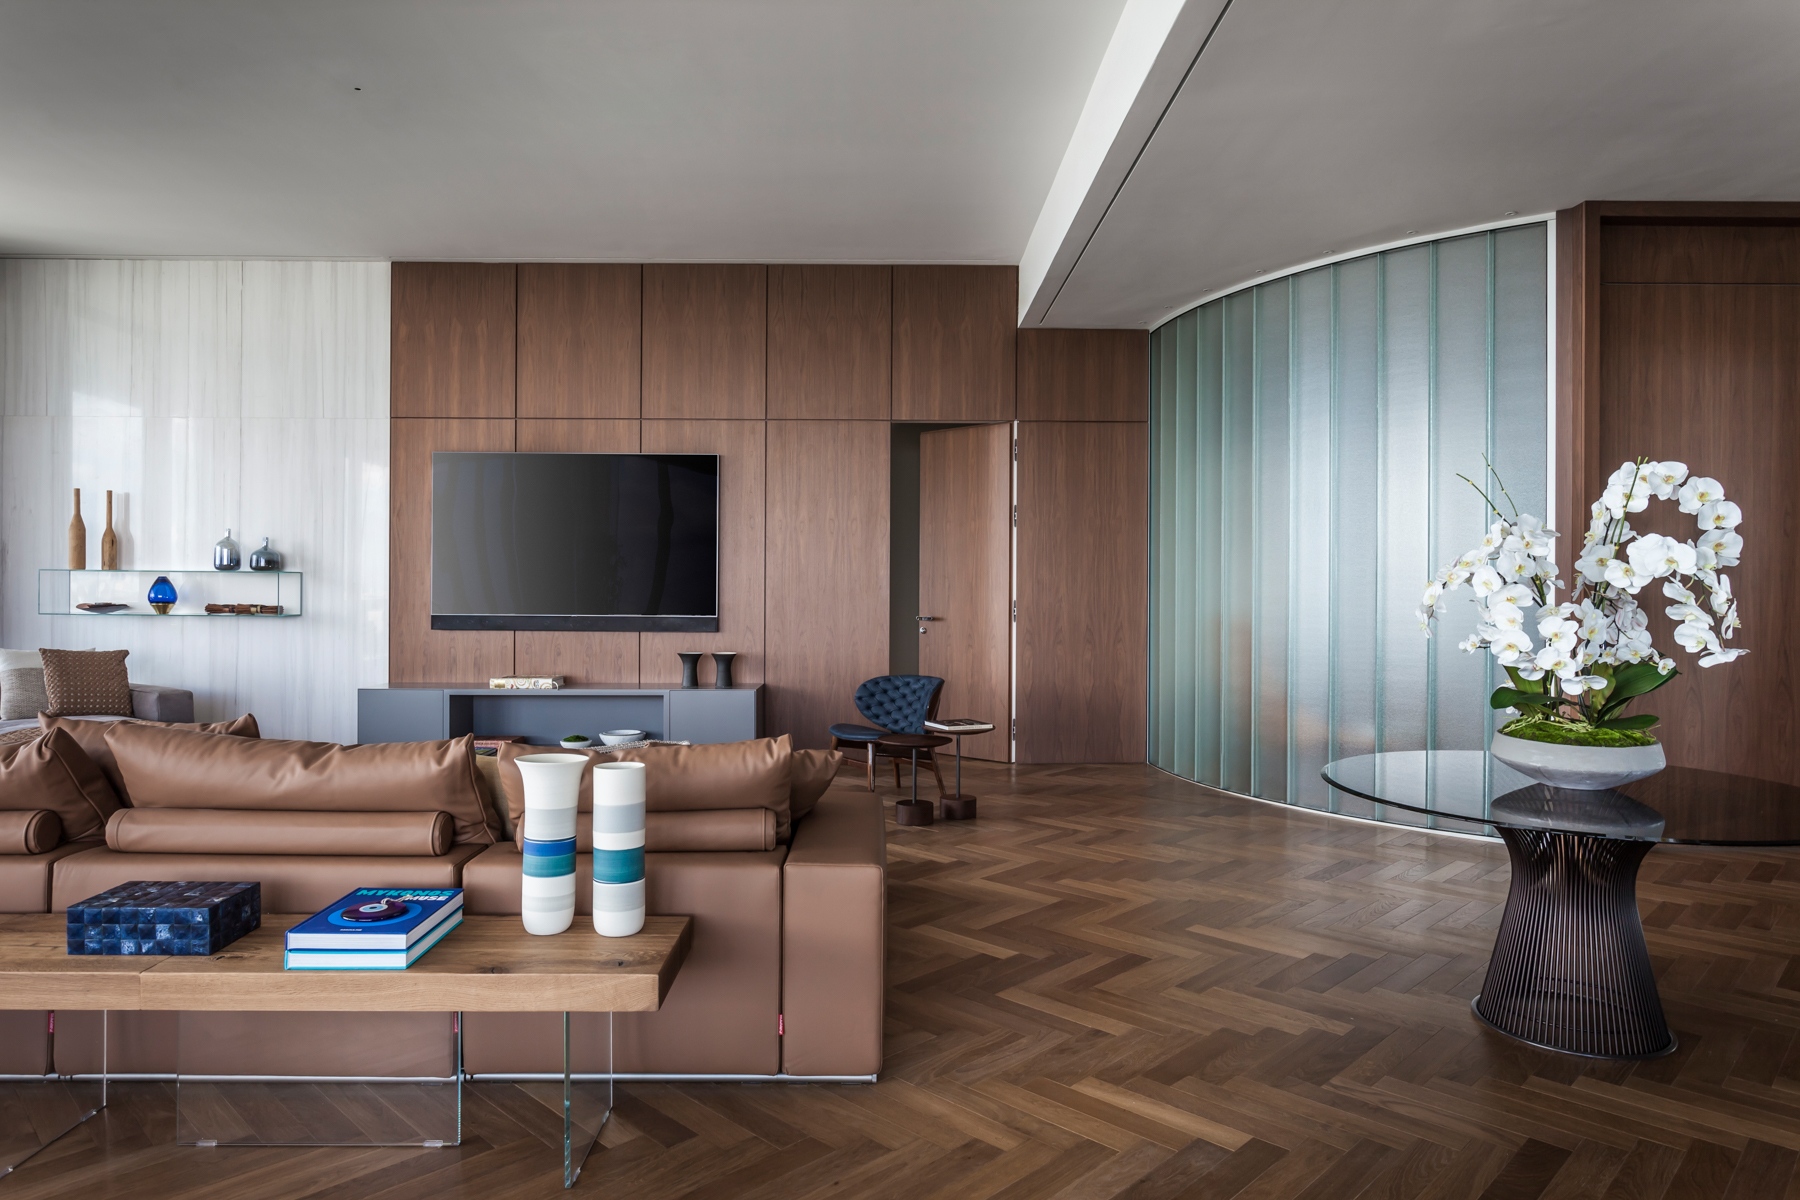 pê de 500 m² com vista para o mar de Miami tem mix de materiais no décor. Projeto de Andrea Chicharo. Na foto, sala com parede de madeira, parede curva e tv.